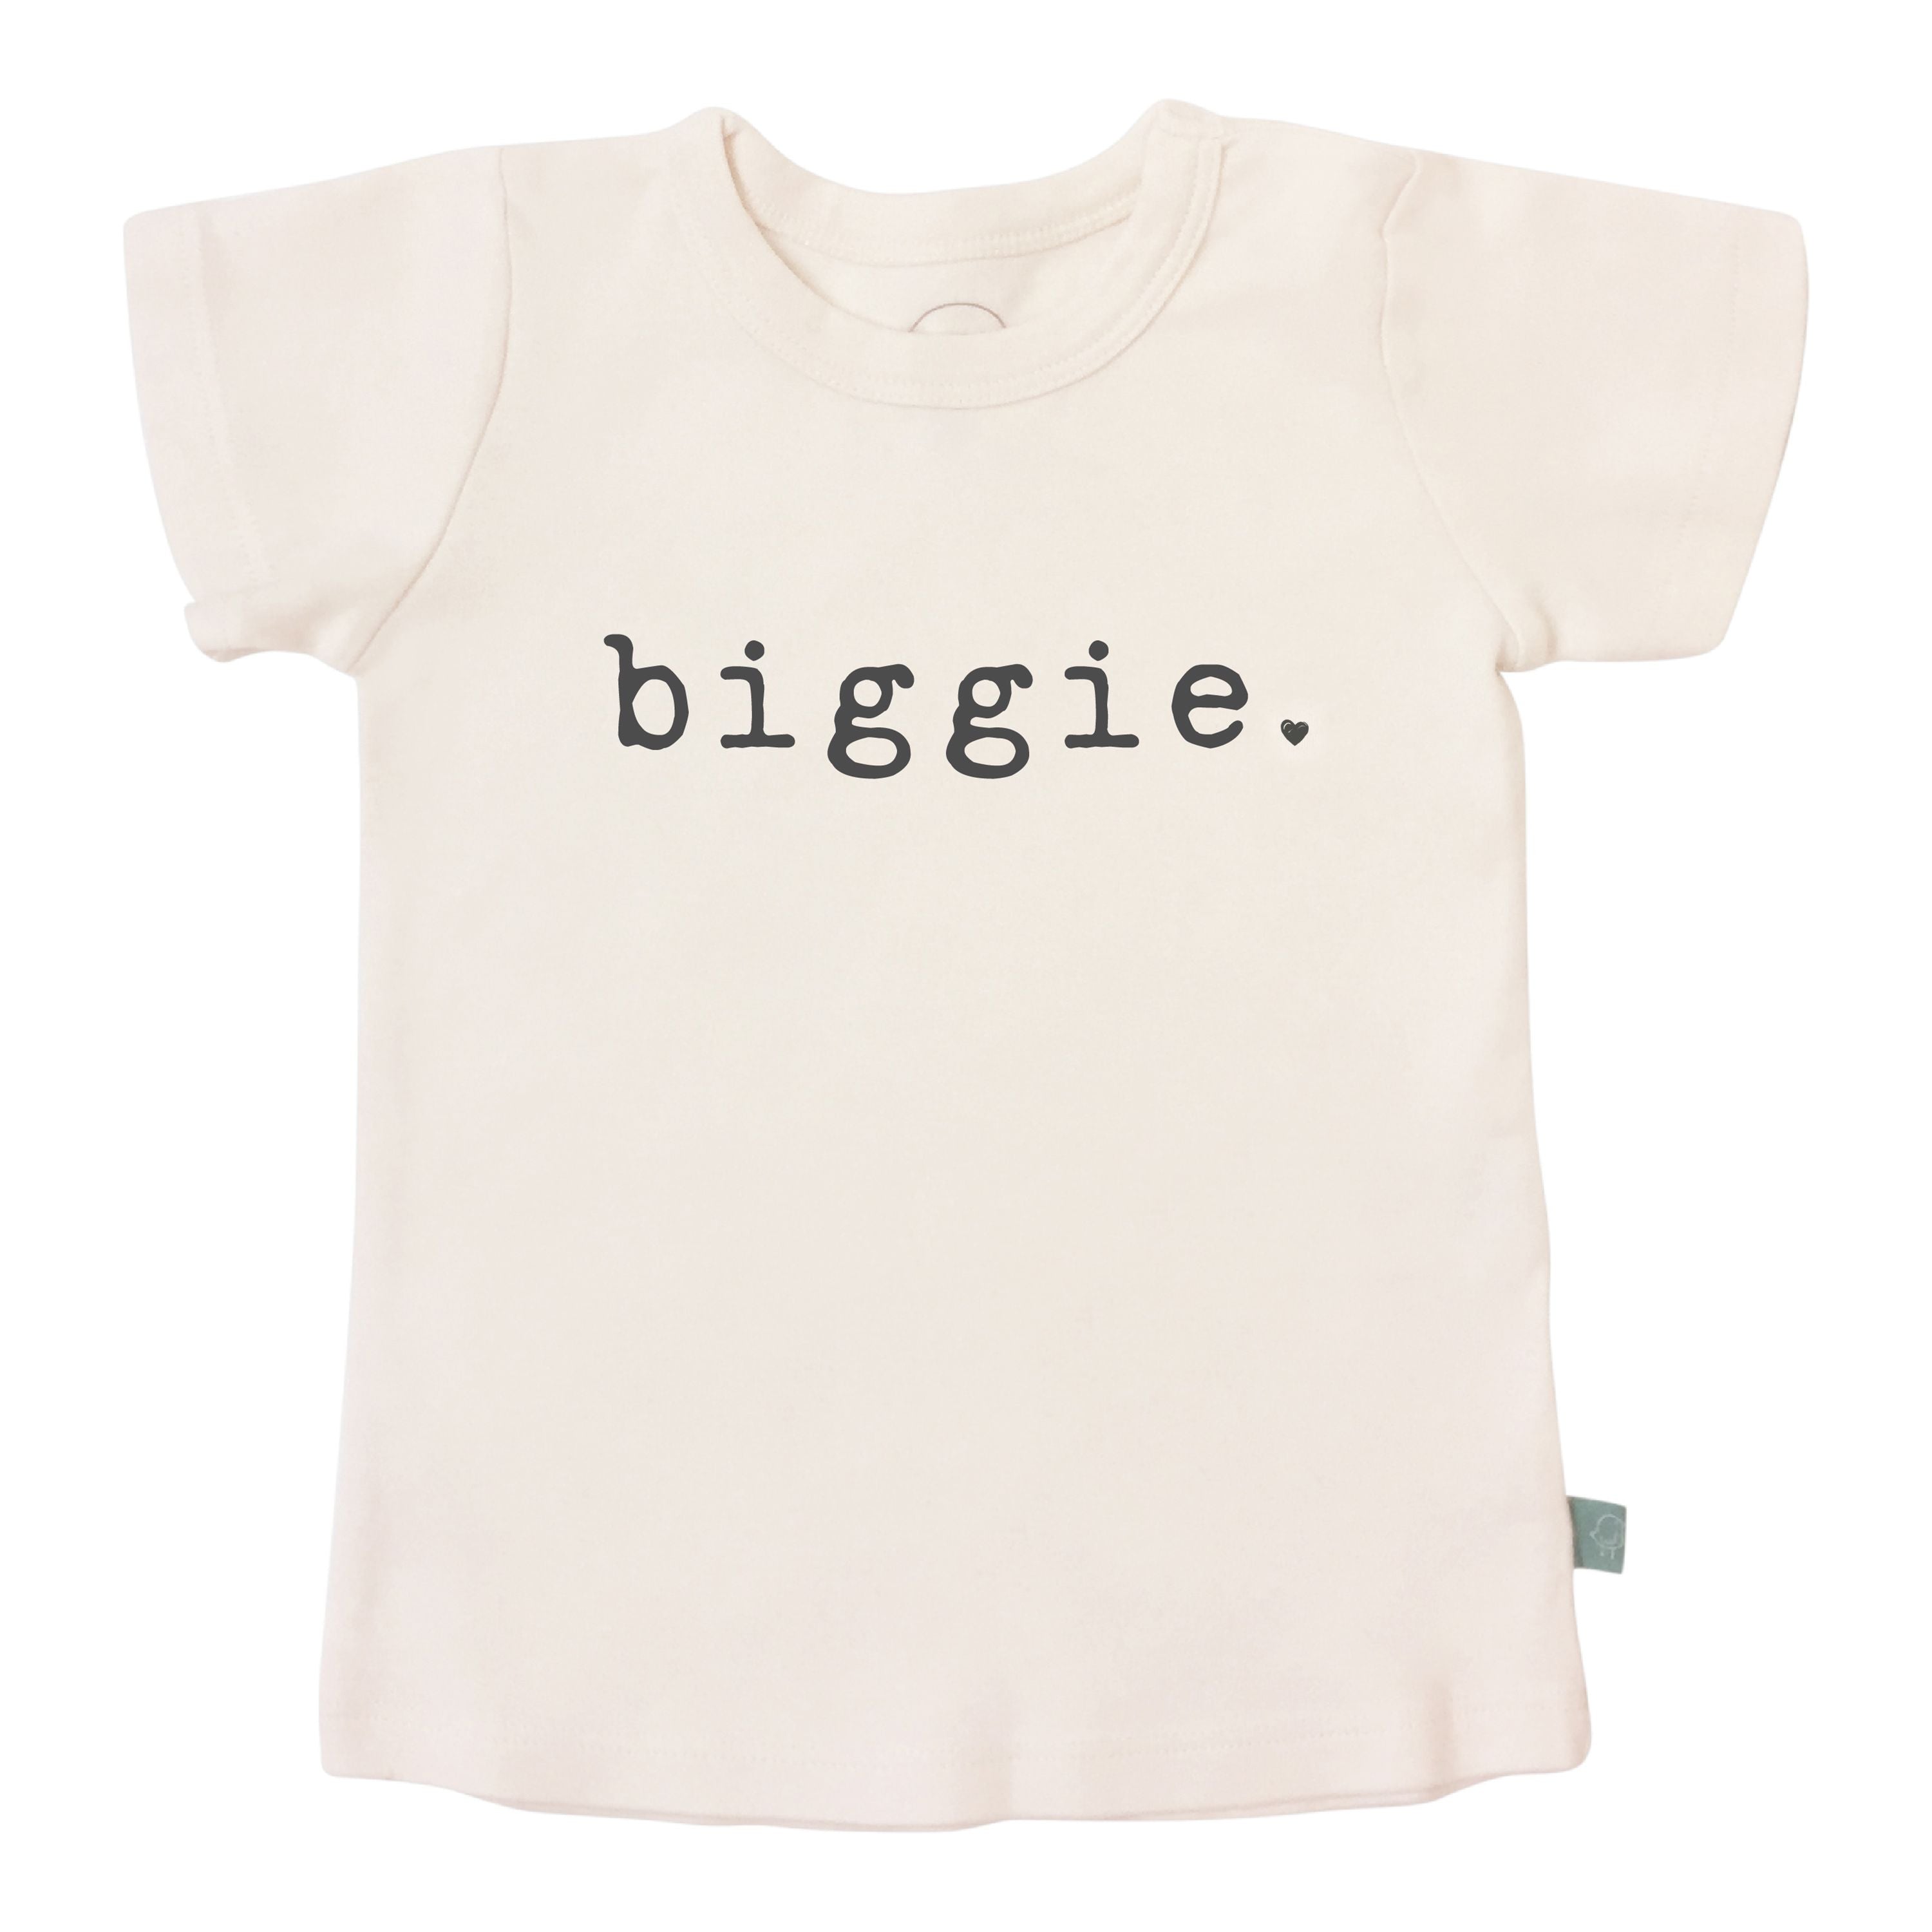 Finn & Emma "Biggie" T-Shirt